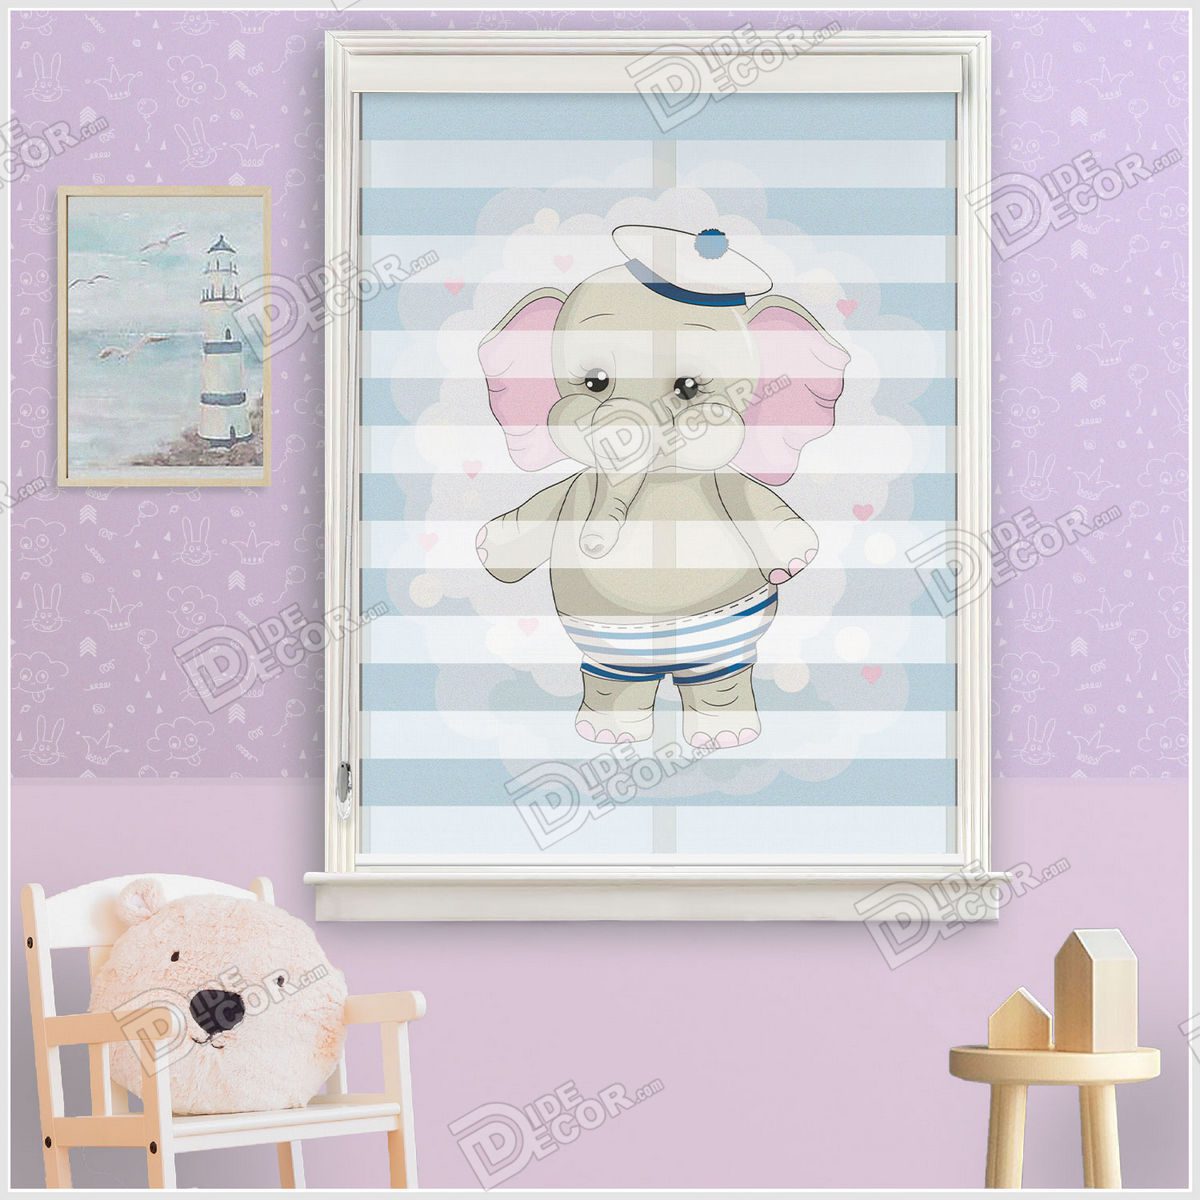 پرده زبرا چاپی کودک کد ZKP-24 پسرانه با تصویری از بچه فیل با لباس کلاه ملوانی و گوش صورتی در زمینه پارچه به رنگ آبی